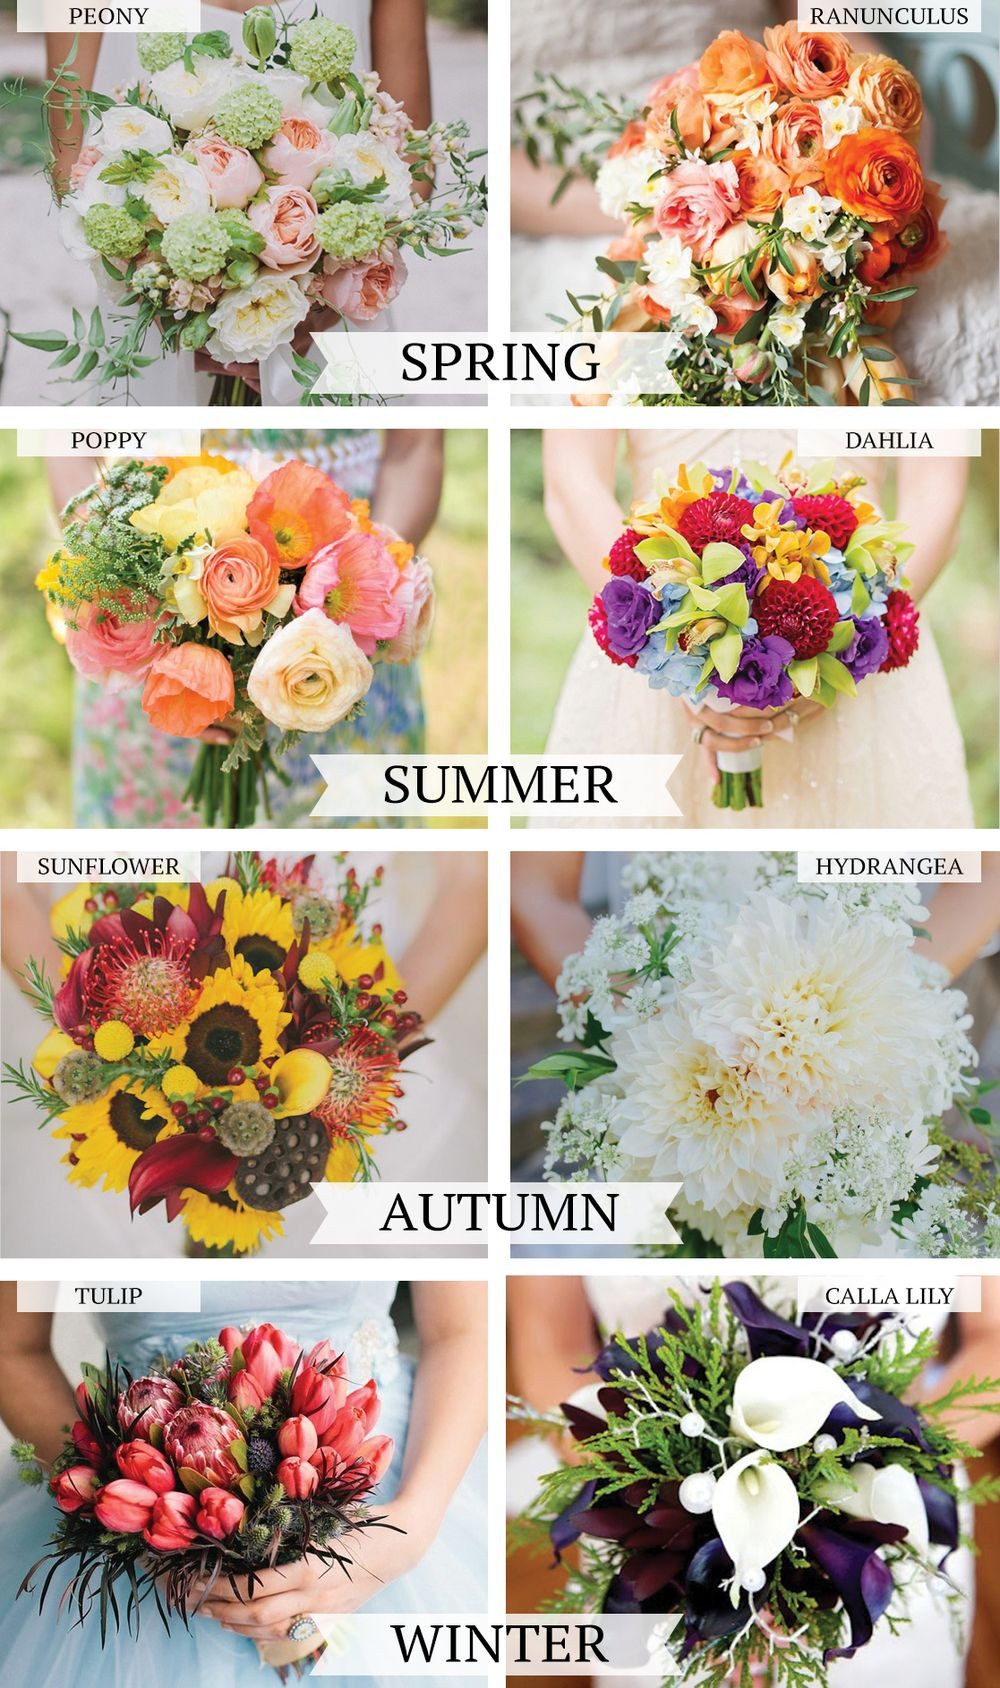 Winter Wedding Flowers In Season
 Wedding flowers by season — Love the Winter